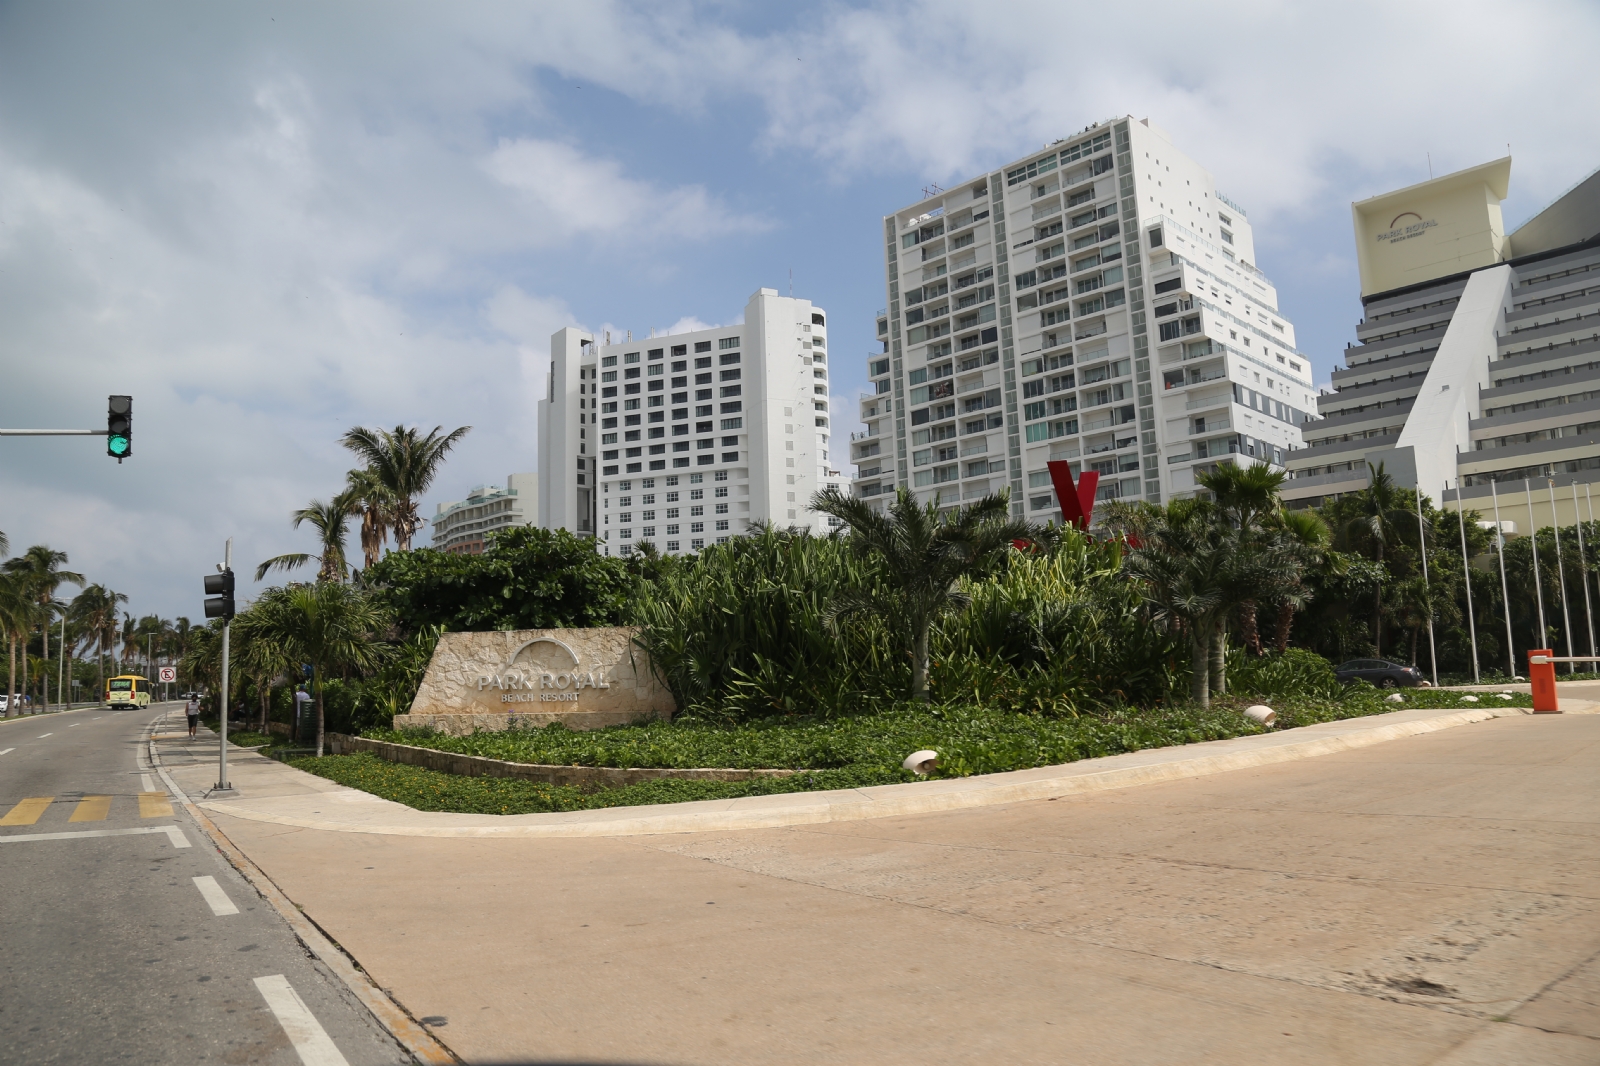 Ahorro energético implica grandes gastos: Empresarios de Cancún